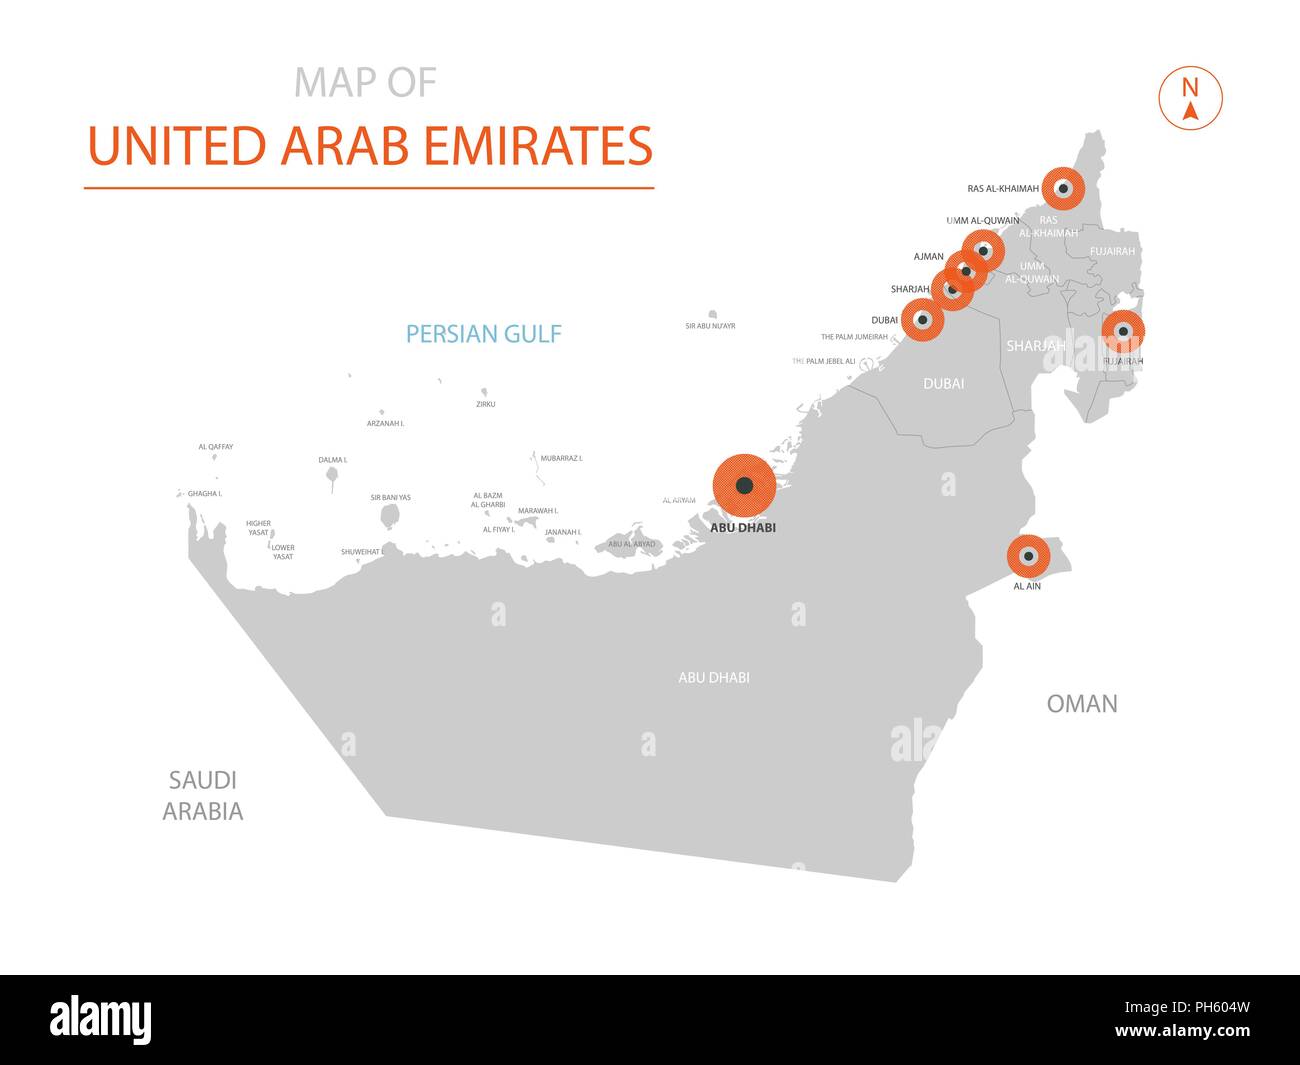 Uae zone. Свободные экономические зоны в ОАЭ. ОАЭ на карте. Свободные экономические зоны в ОАЭ карта. Объединённые арабские эмираты карта Эмиратов.